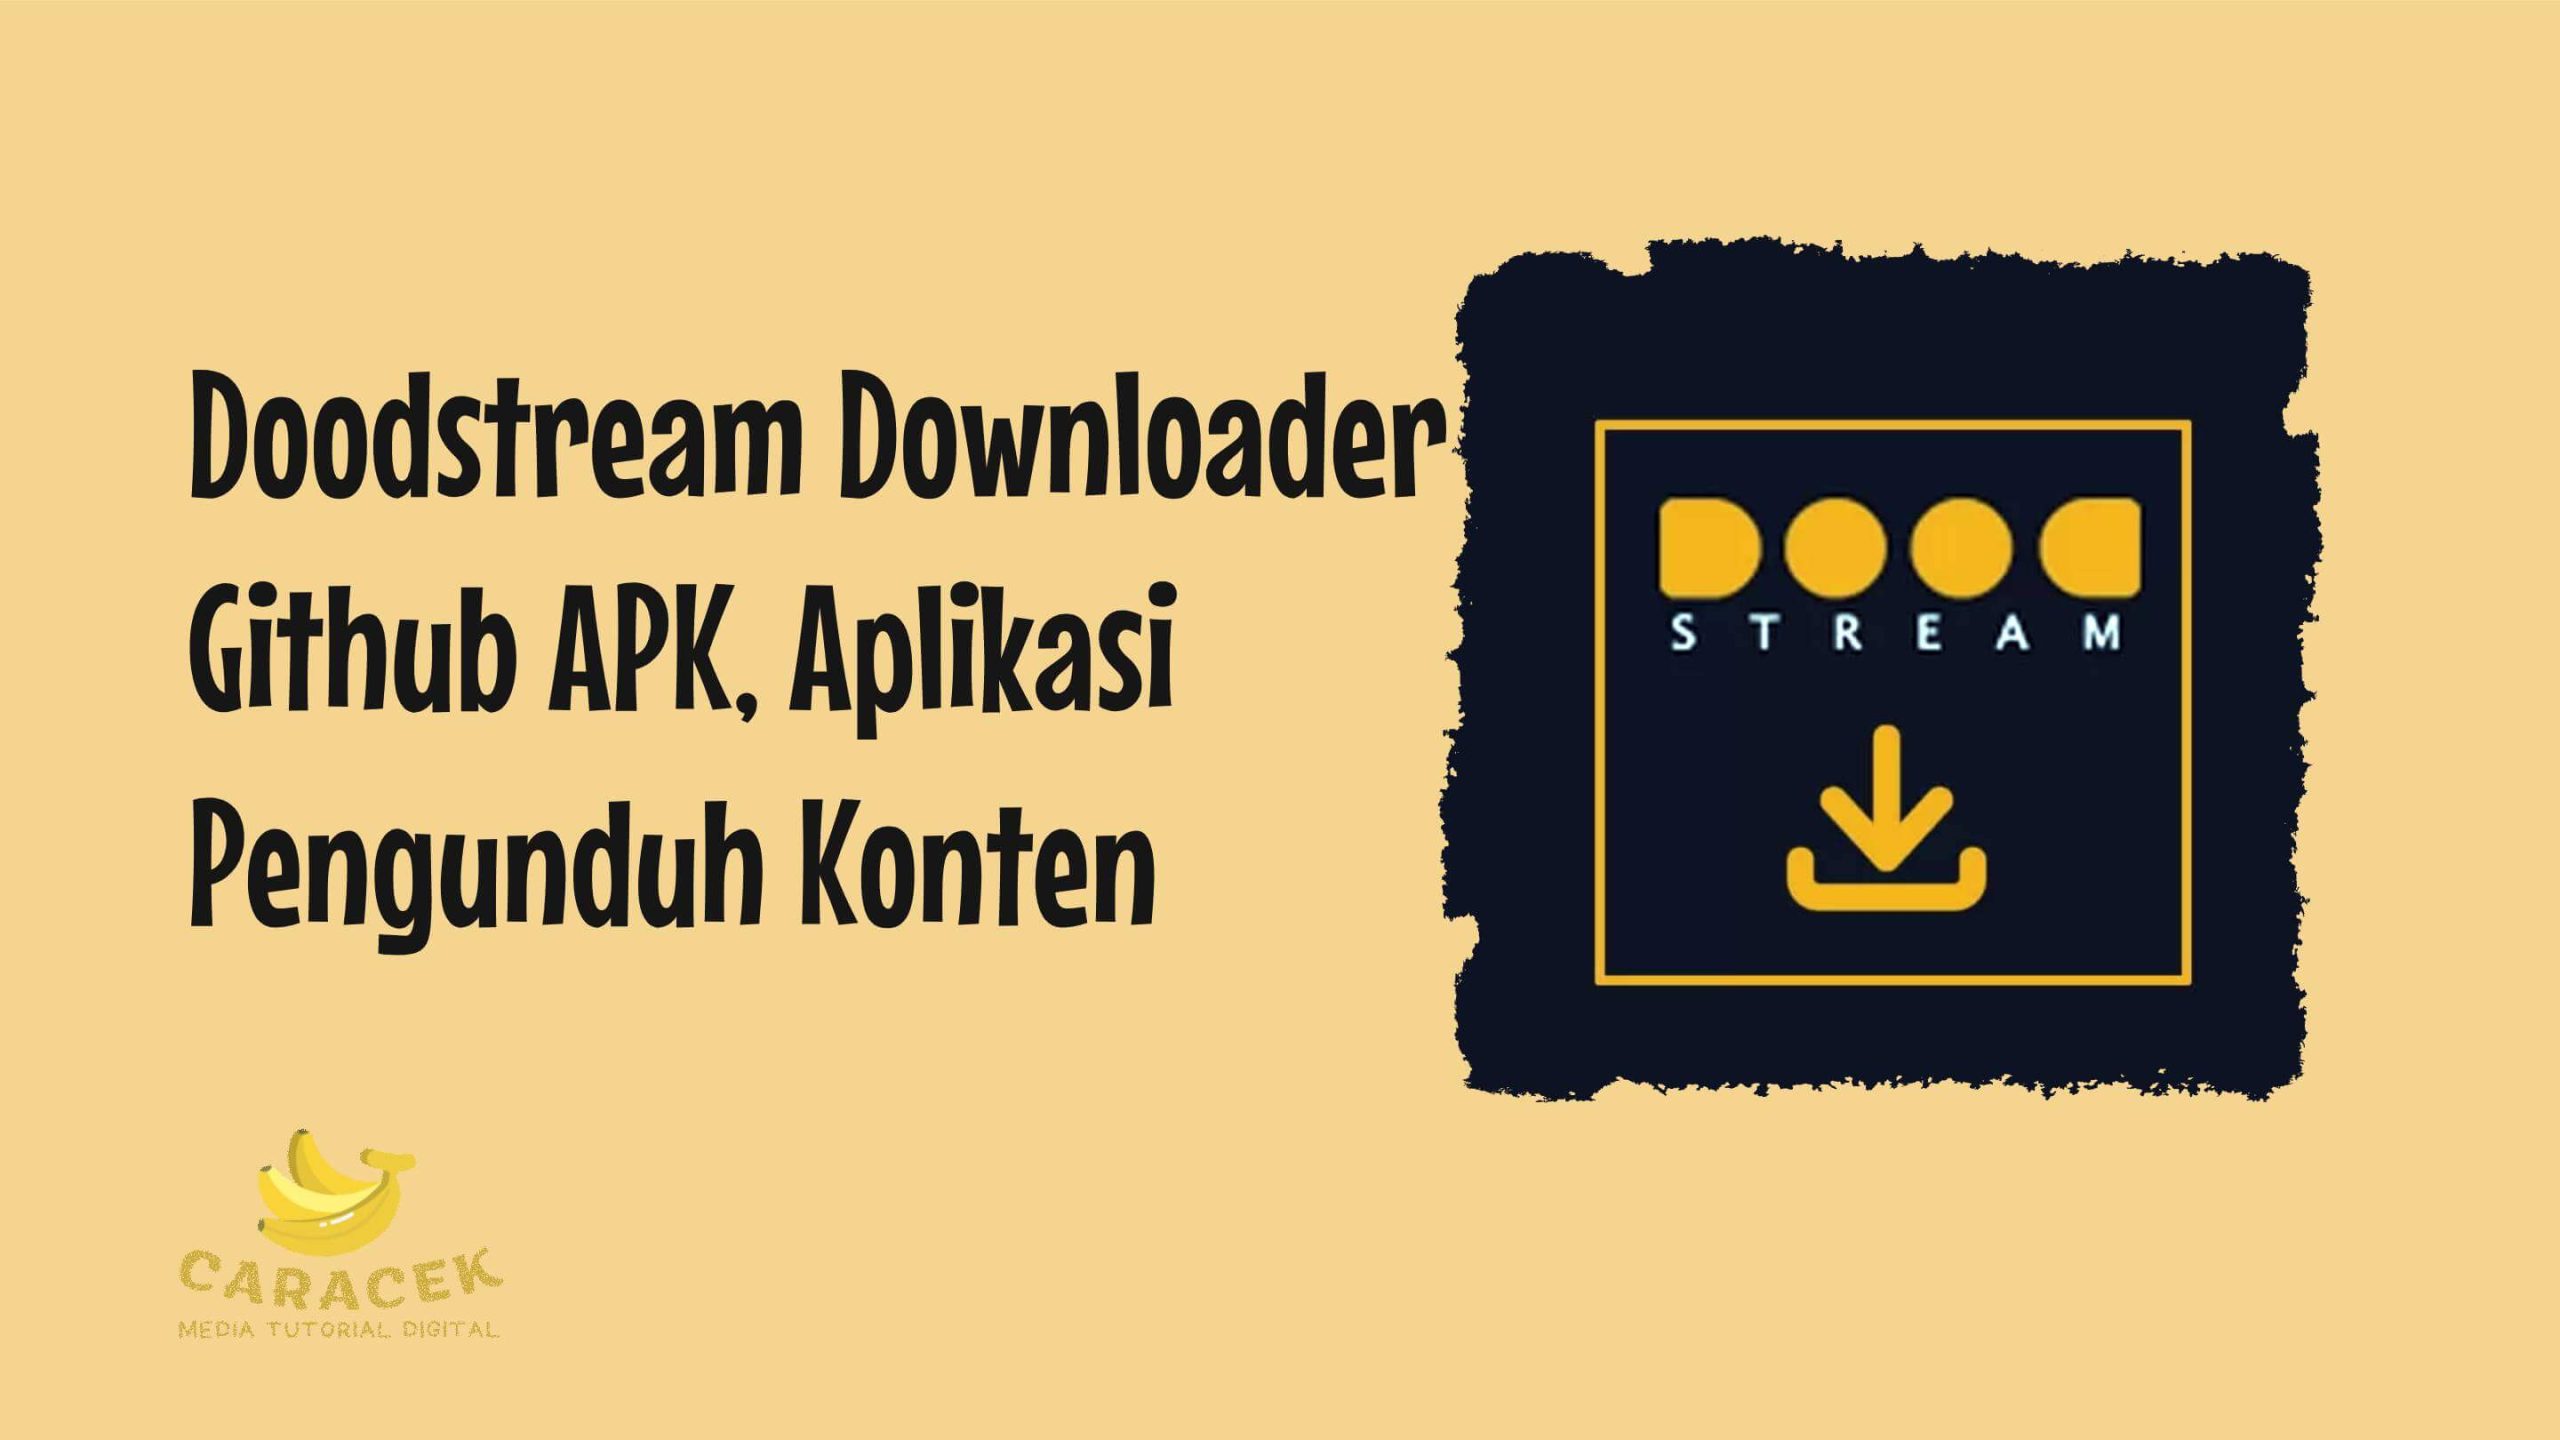 Doodstream Downloader Github APK